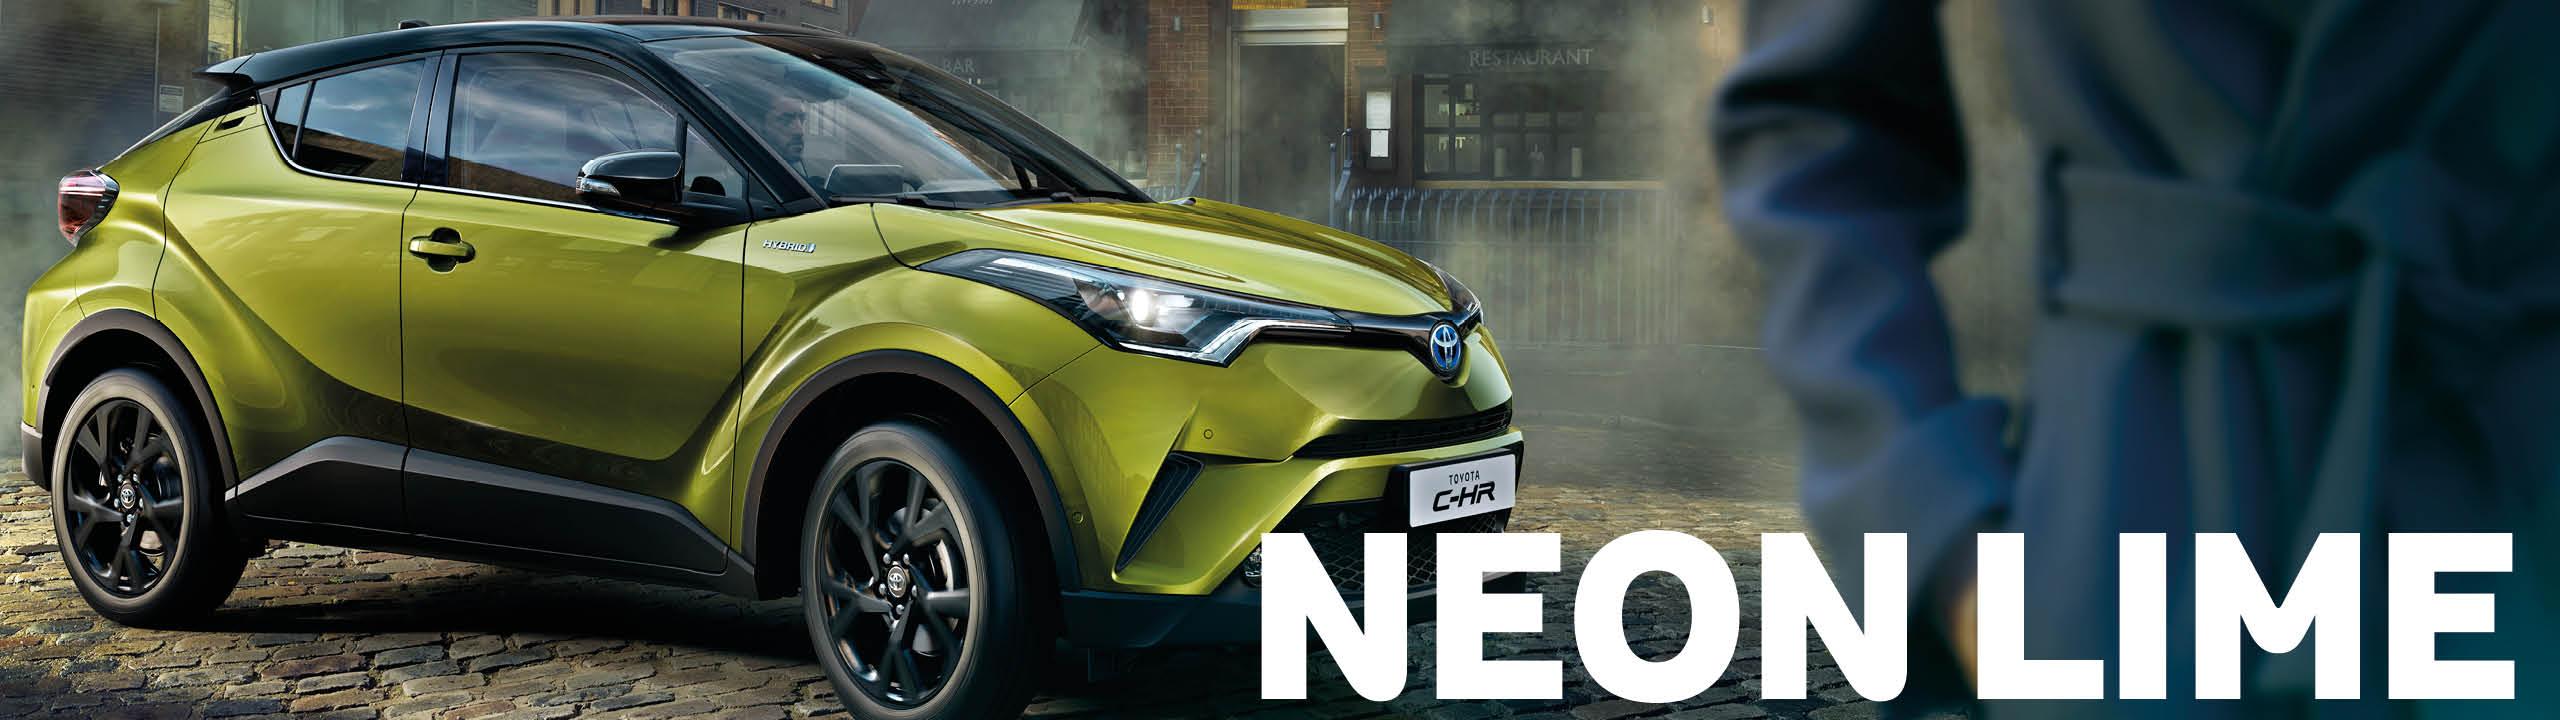 Toyota C-HR Neon Lime, grün mit schwarzem Dach, steht in der Seitenansicht auf Pflasterstein, in der rechten Bildschirmhälfte ist ein Teil einer Person in einem Mantel zu sehen